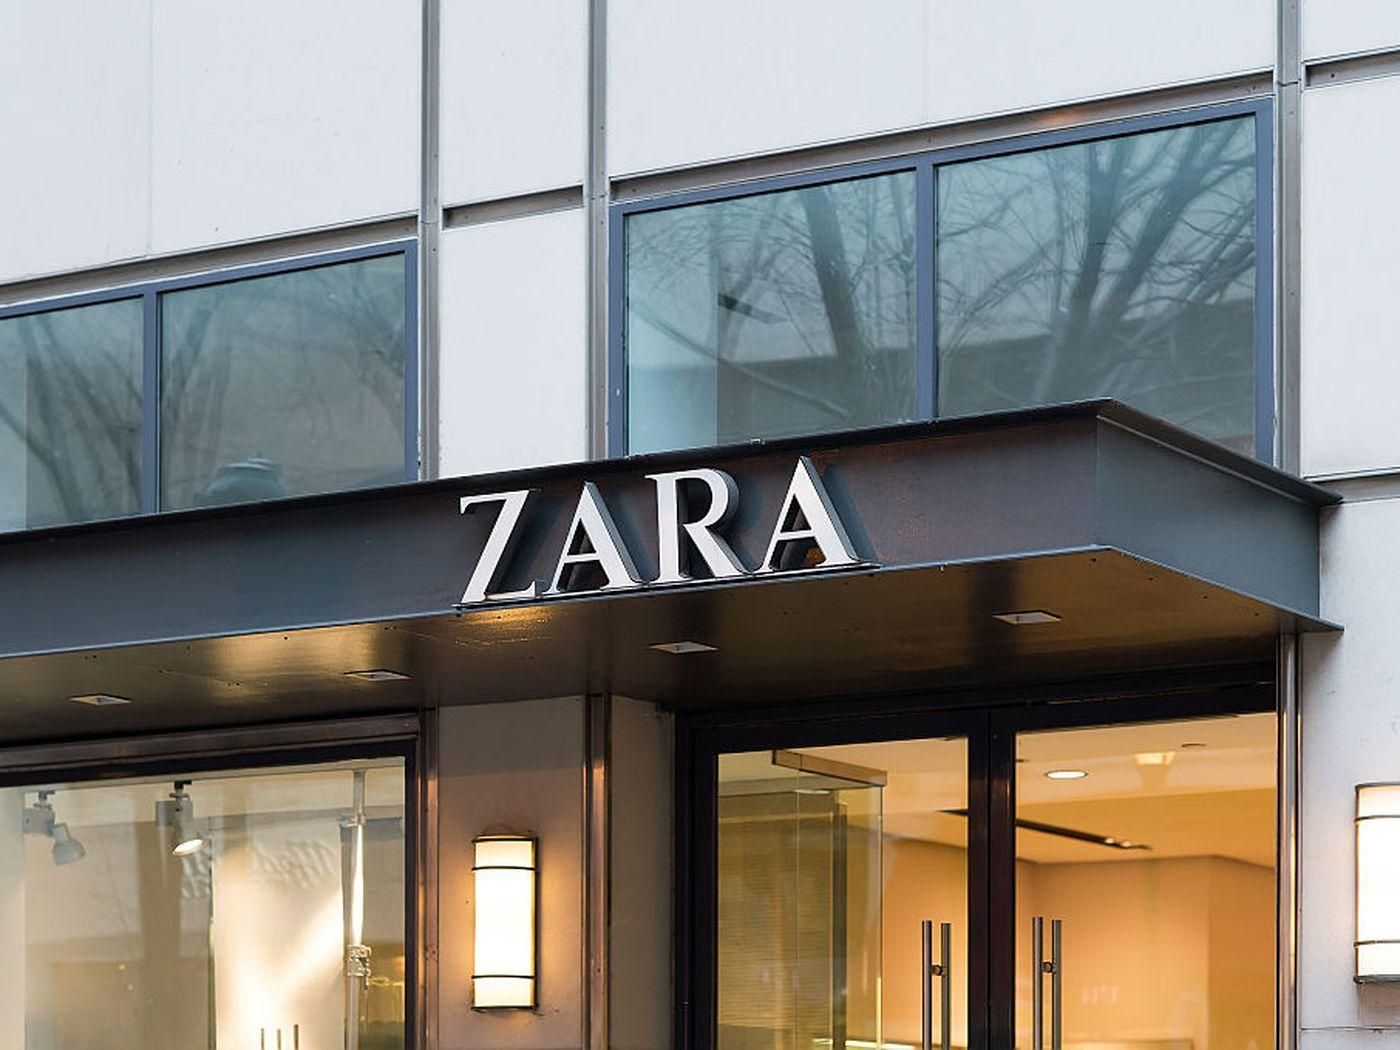 Інноваційний дизайн: Zara відкриває у Нью-Йорку найяскравішу вітрину у своїй історії – відео - Дизайн 24